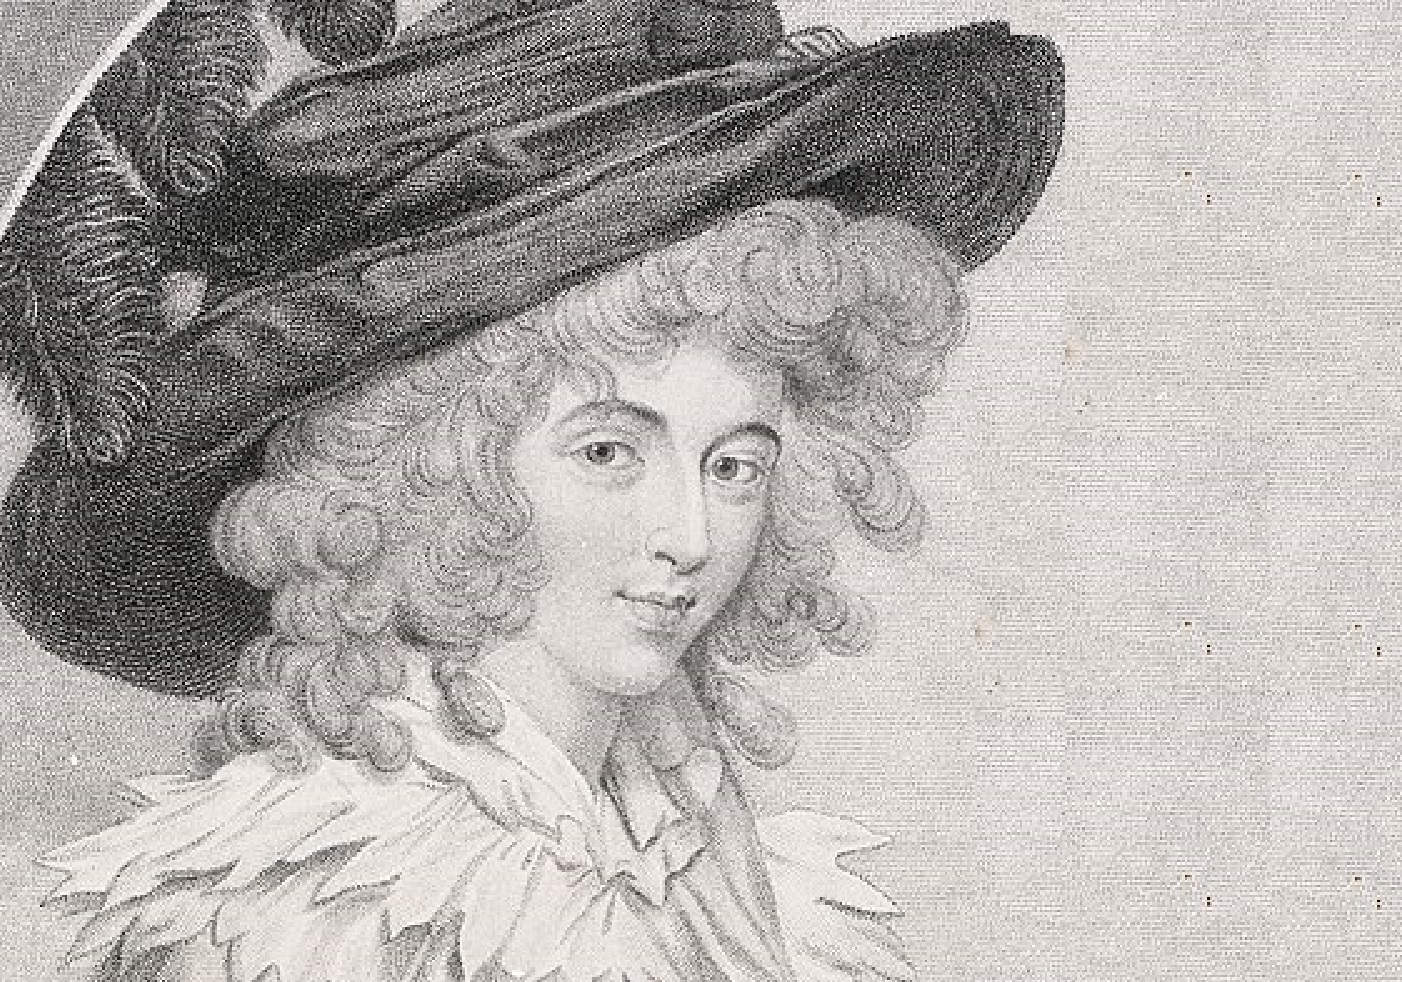 Henrietta-Countess of Bessborough Facts